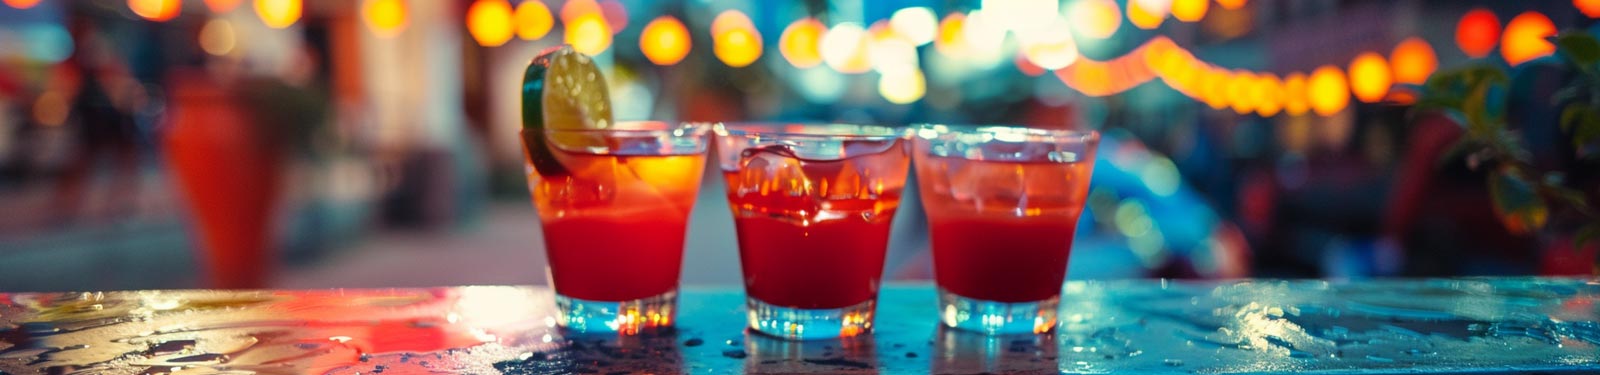 Drei Cocktails mit roter Farbgebung, garniert mit Limettenscheiben, stehen auf einer nassen Bartheke, im Hintergrund sind verschwommene Lichter zu sehen, die eine lebendige Abendatmosphäre schaffen.